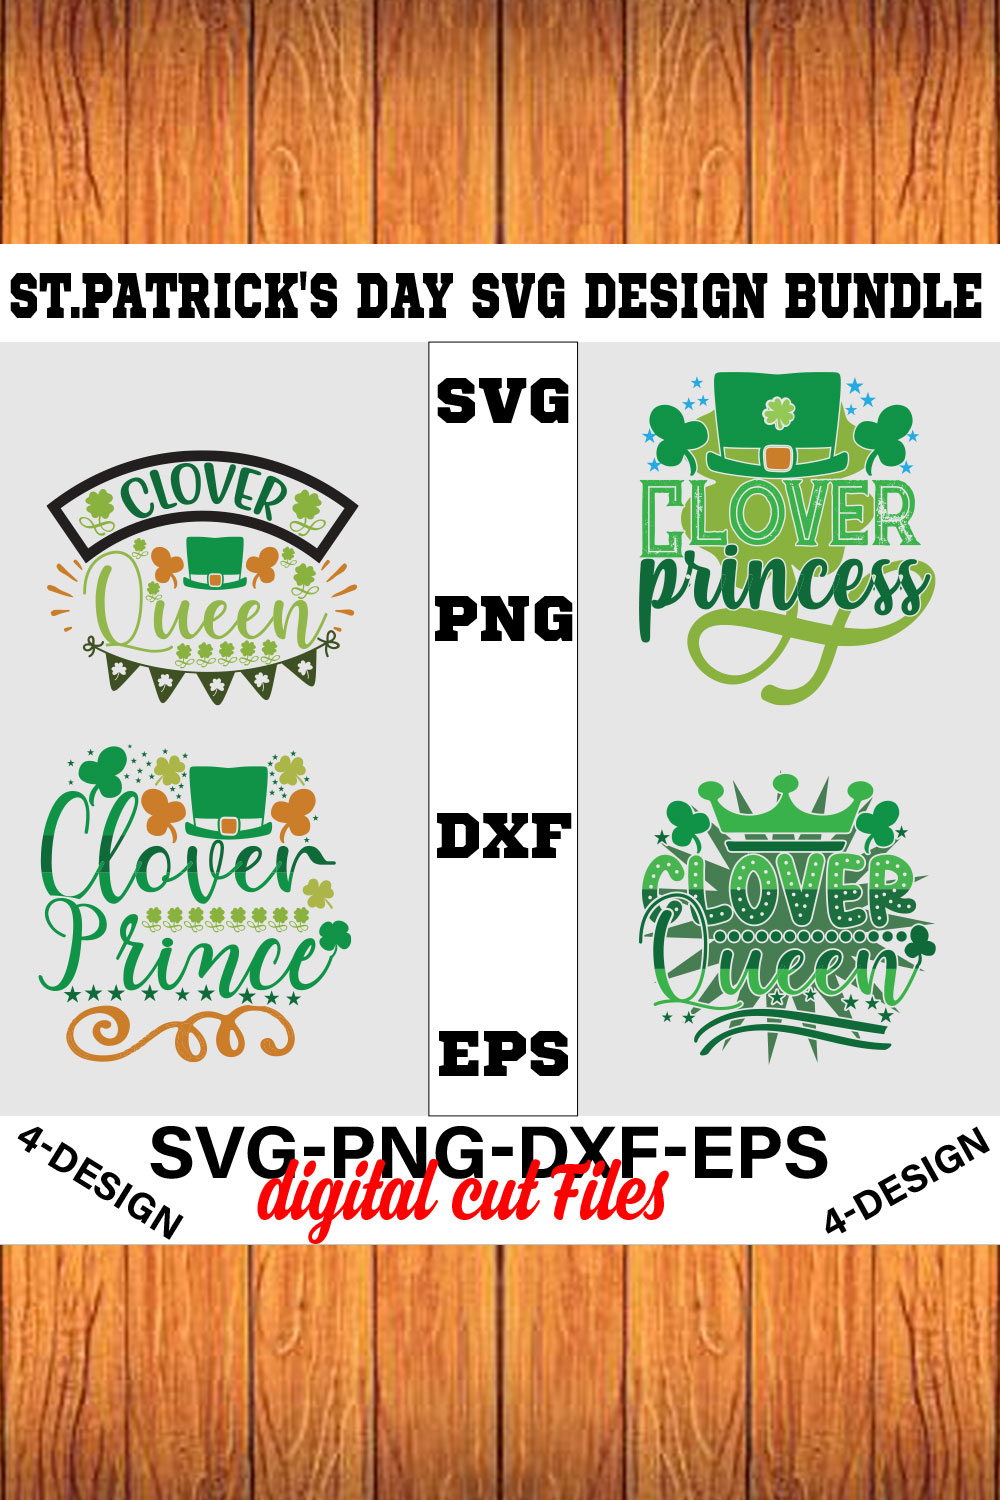 Stpatrick's Day Svg Design Bundle Vol-01 pinterest preview image.